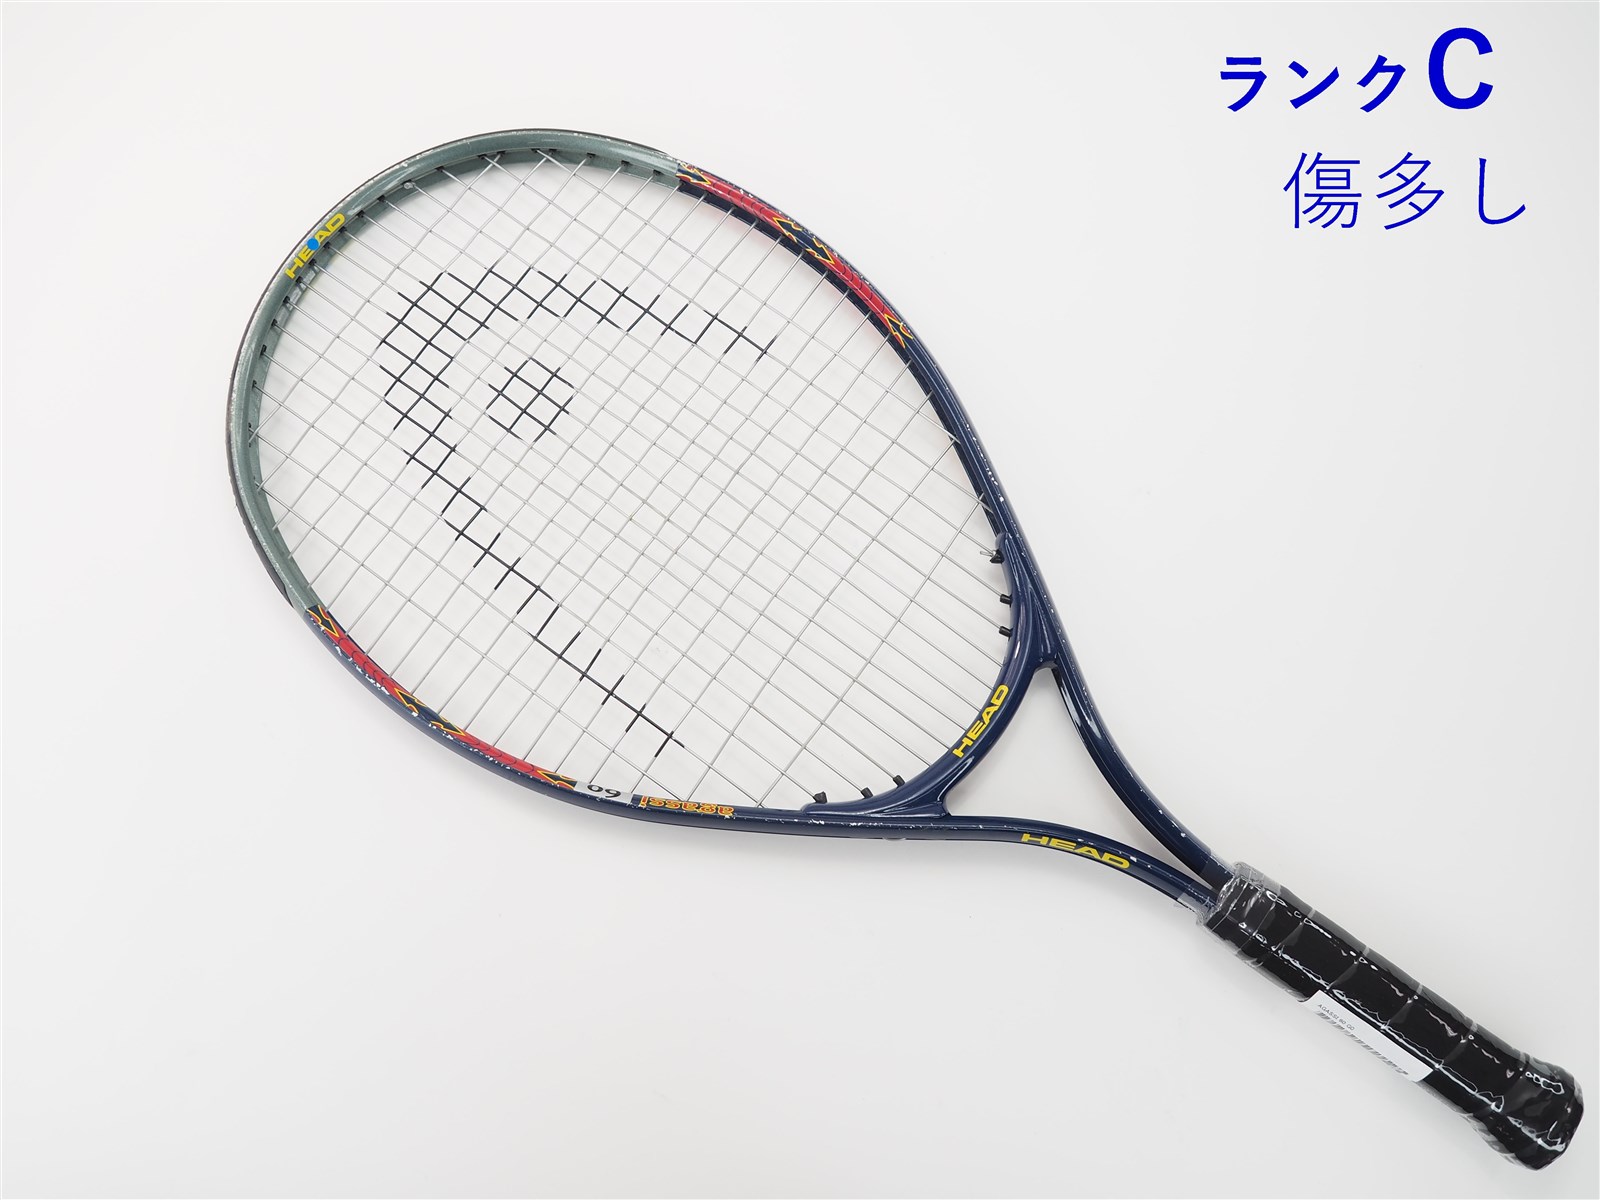 テニスの王子様 丸井ブン太使用モデル ウィルソン トライアド3 